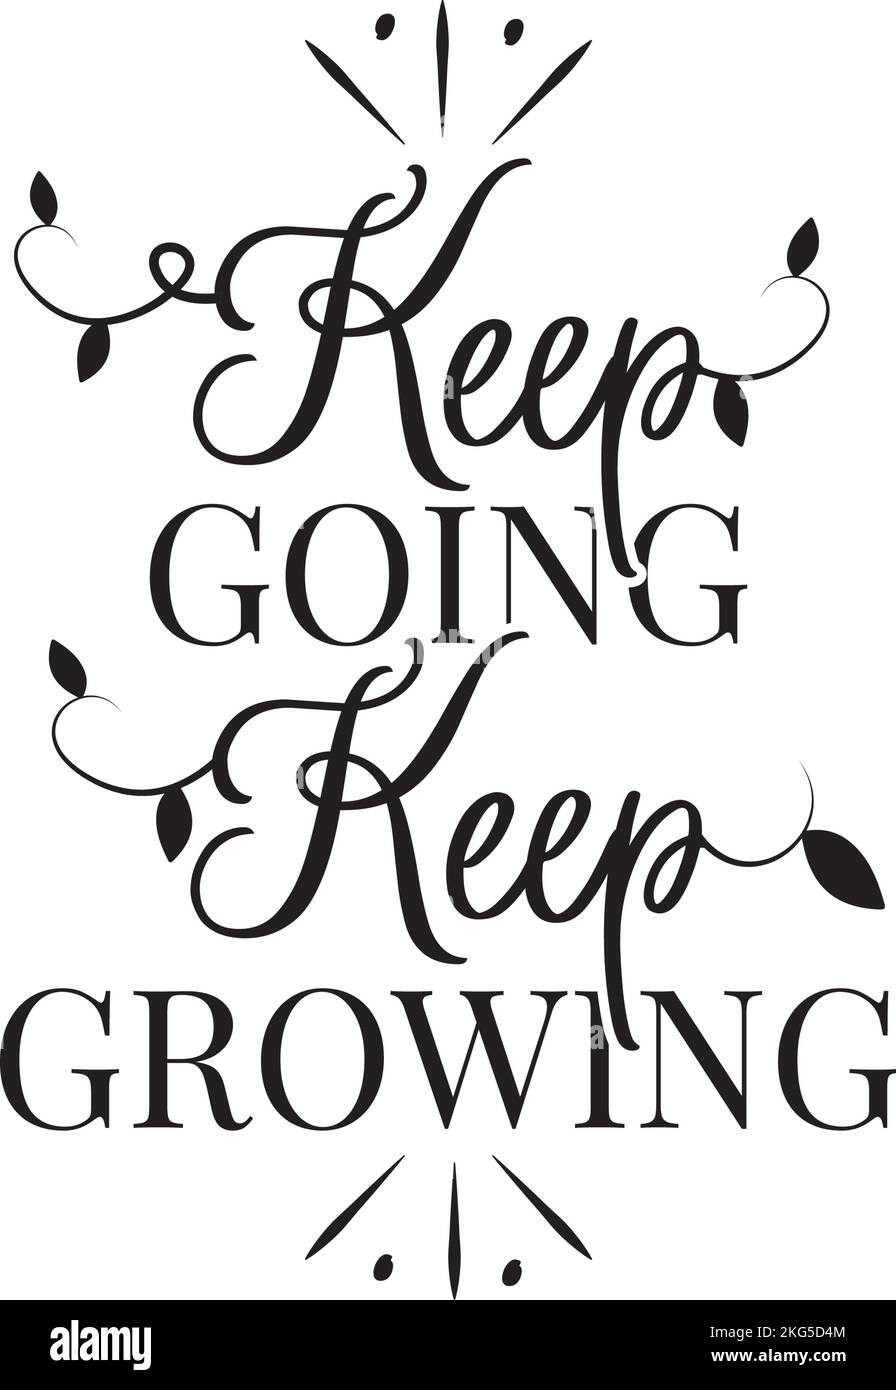 Keep Going Keep Growing, Vektor. Motivierendes inspirierendes Lebenszitat. Positives Denken, Affirmation. Wording-Design isoliert auf weißem Hintergrund Stock Vektor